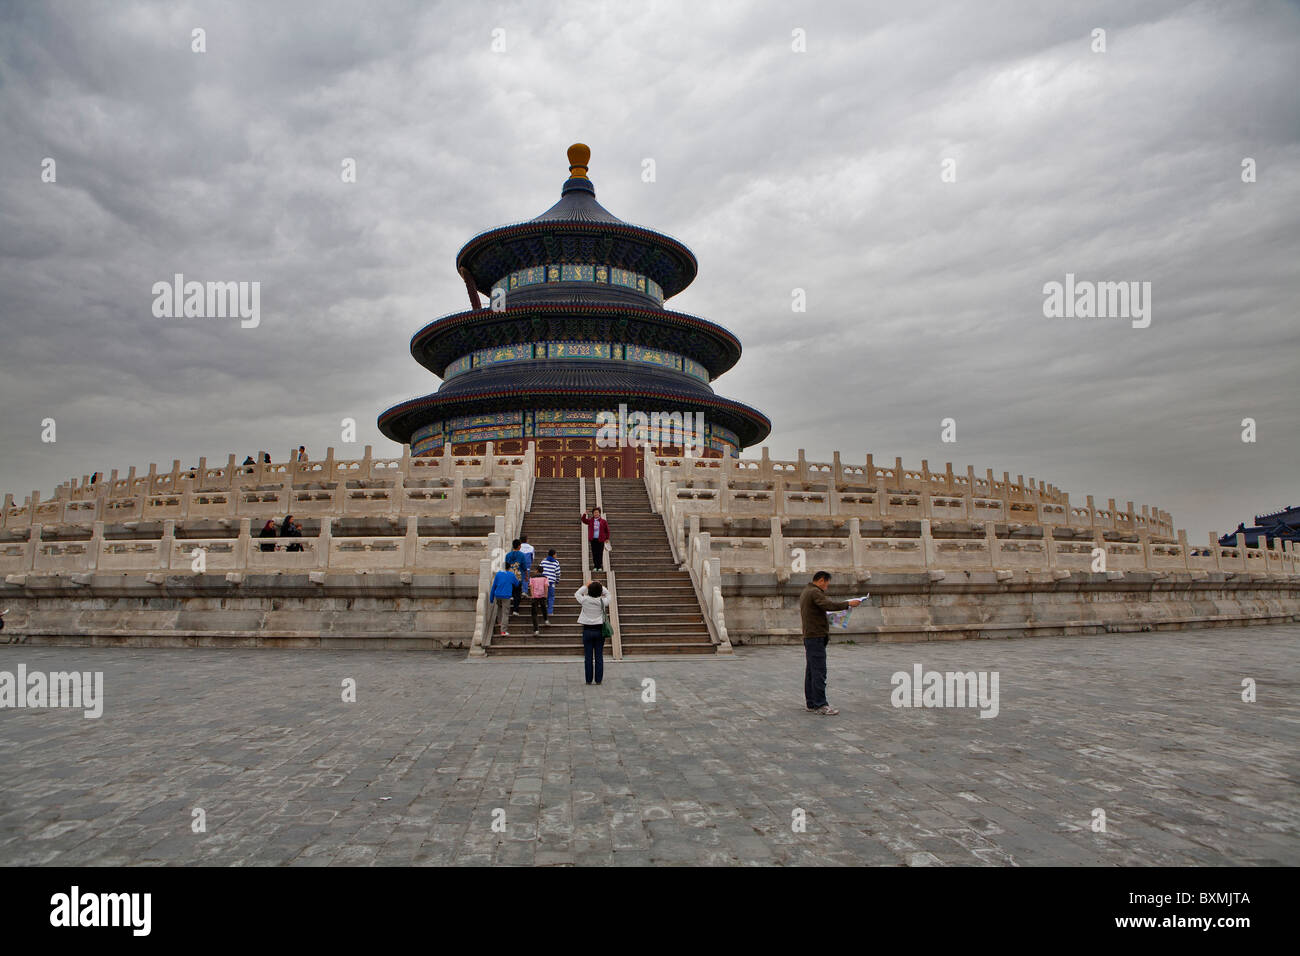 Touristen auf der Himmelstempel in Peking, China Stockfoto